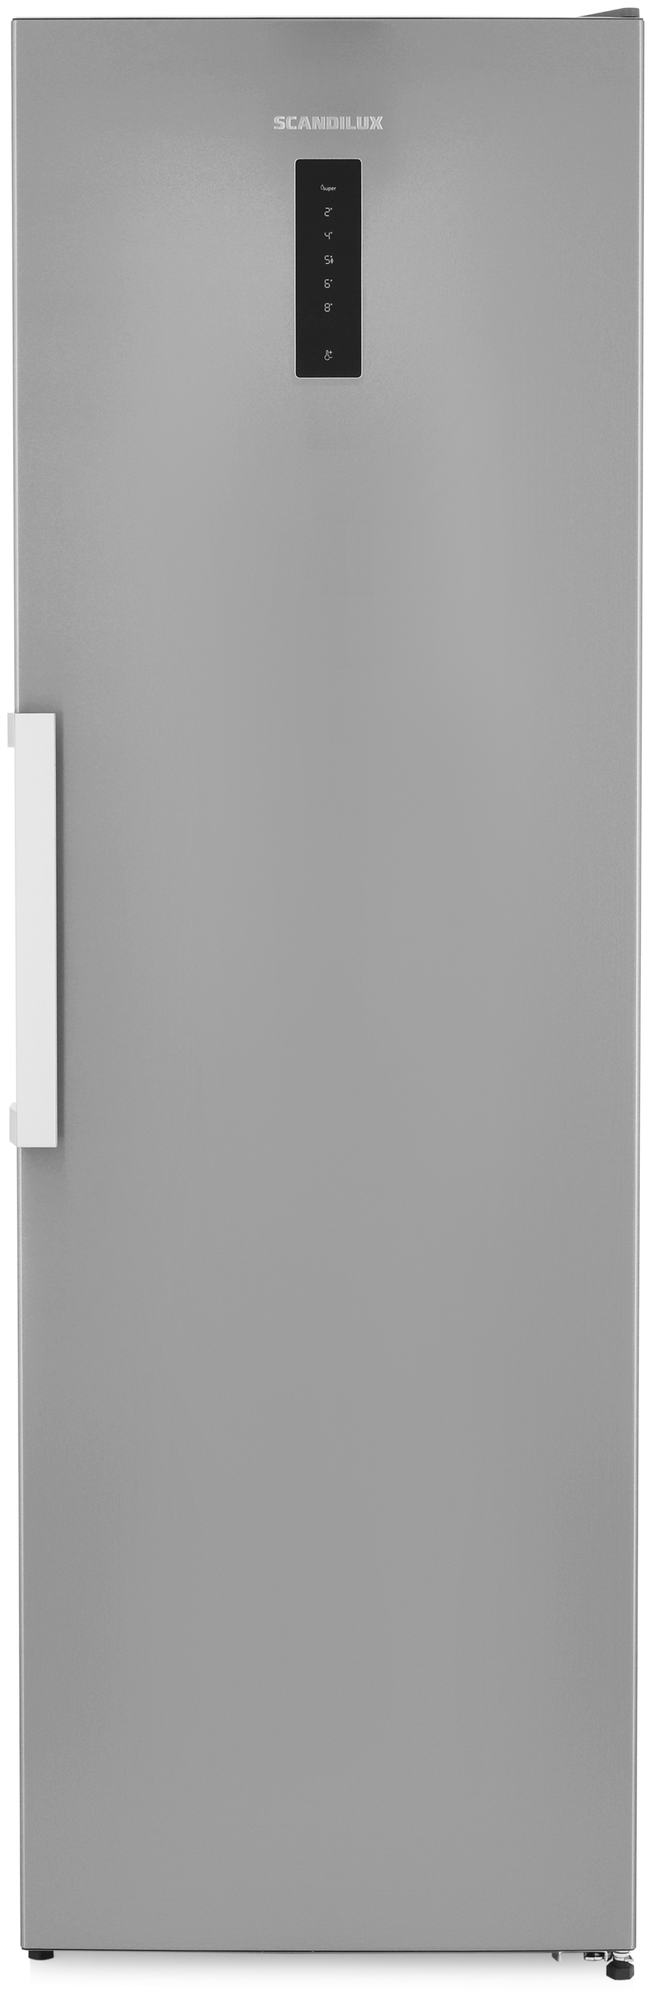 Однокамерный холодильник SCANDILUX R711EZ12 Х